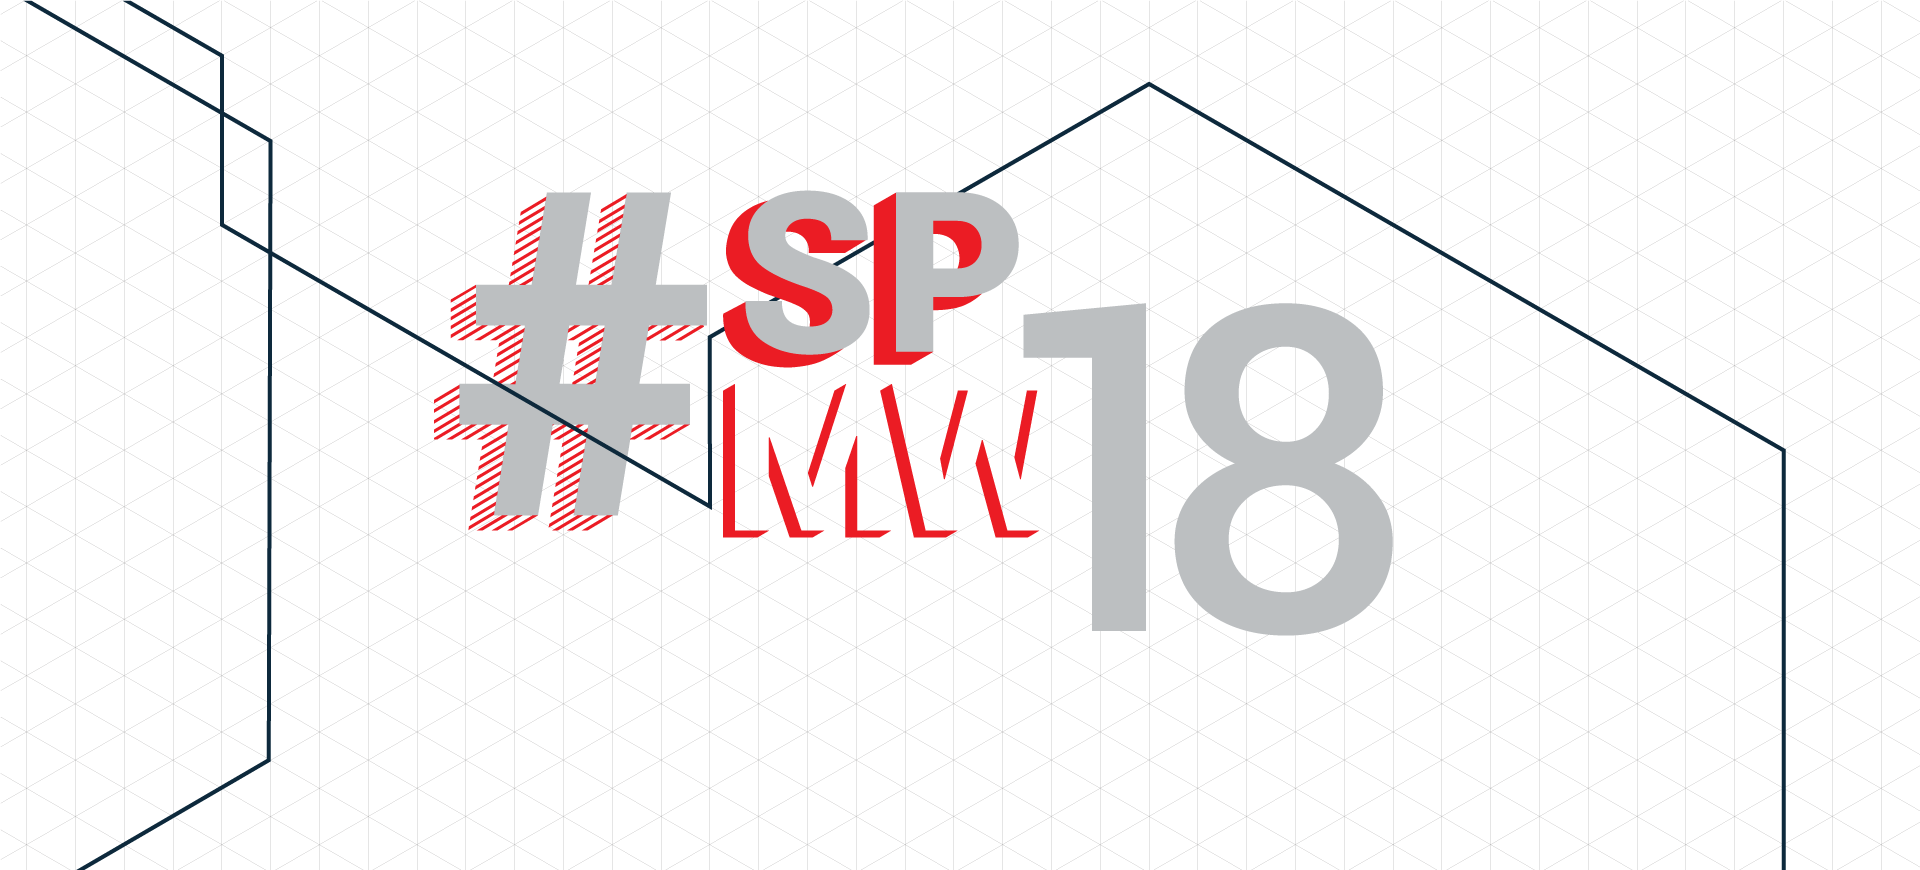 Background com textura hexagonal, constando em caixa alta, #SPMW 2018